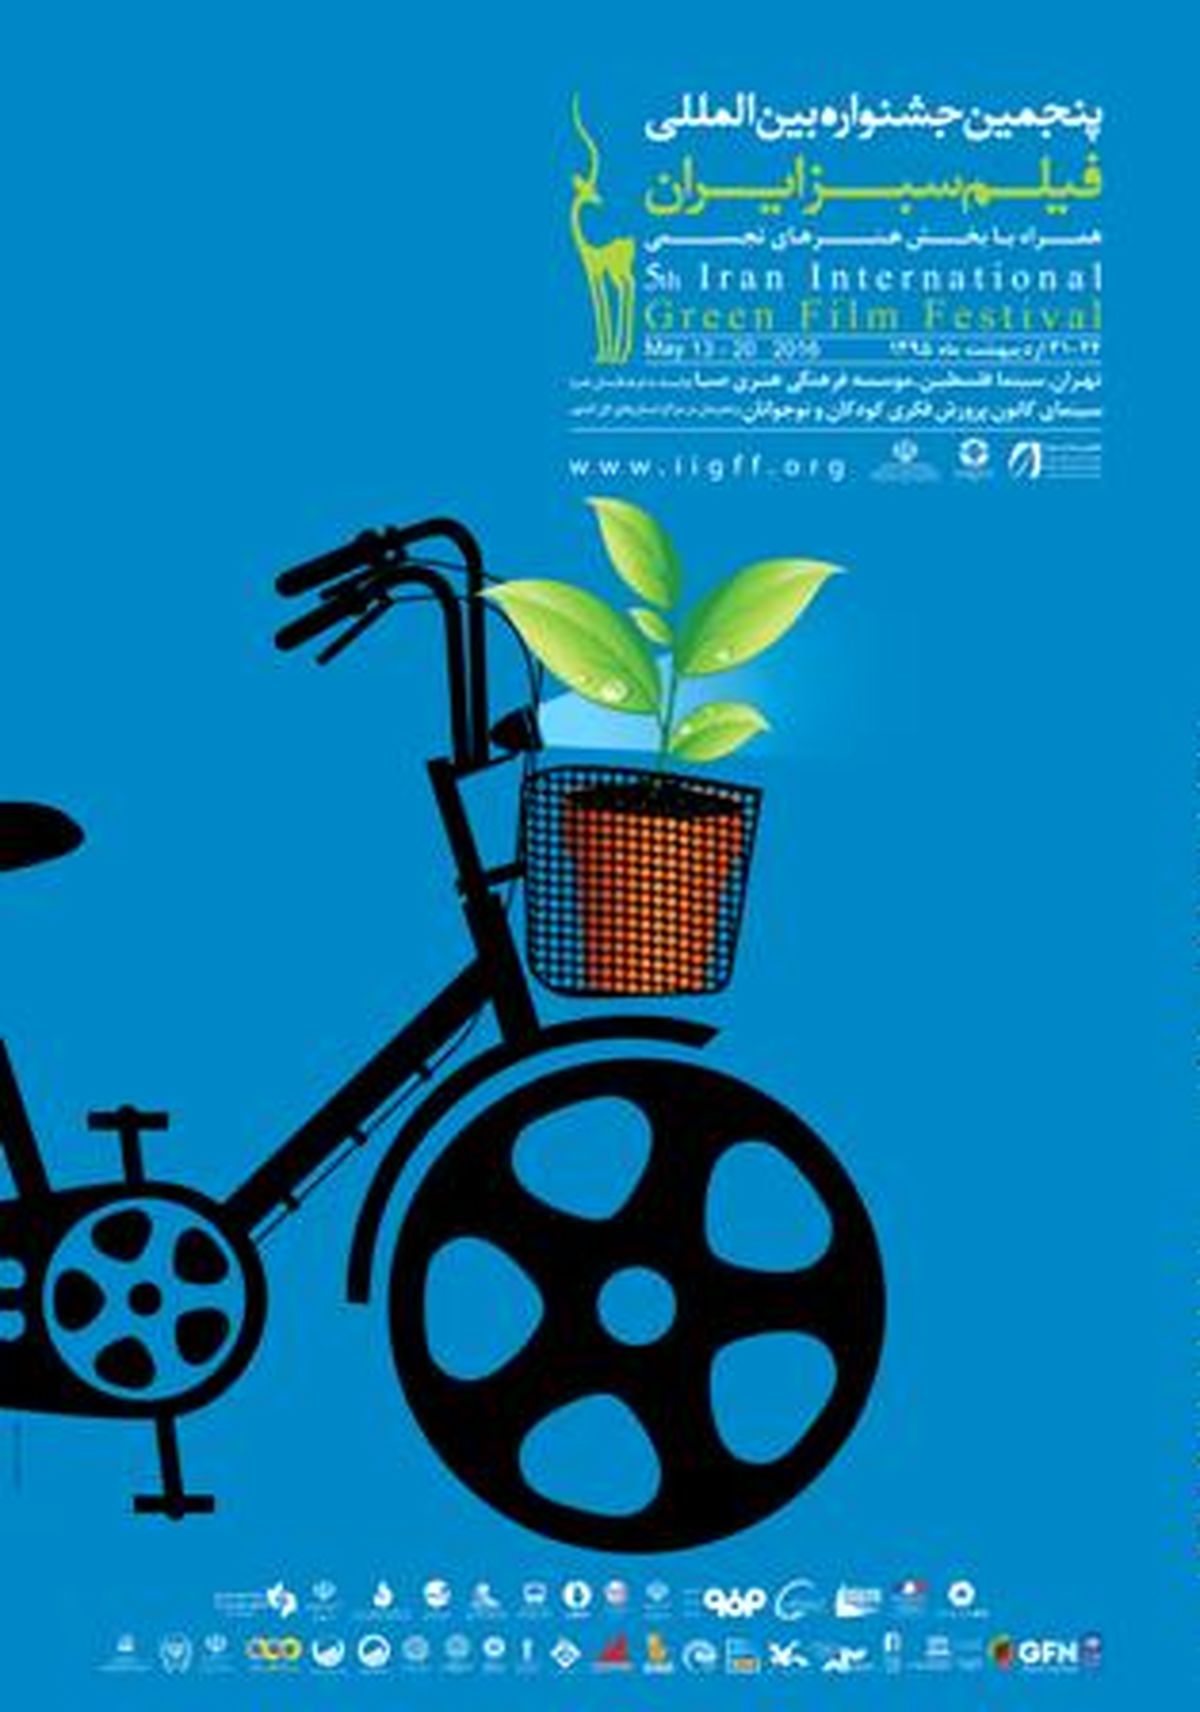 نمایش اینترنتی رویدادهای جشنواره فیلم سبز به صورت آنلاین